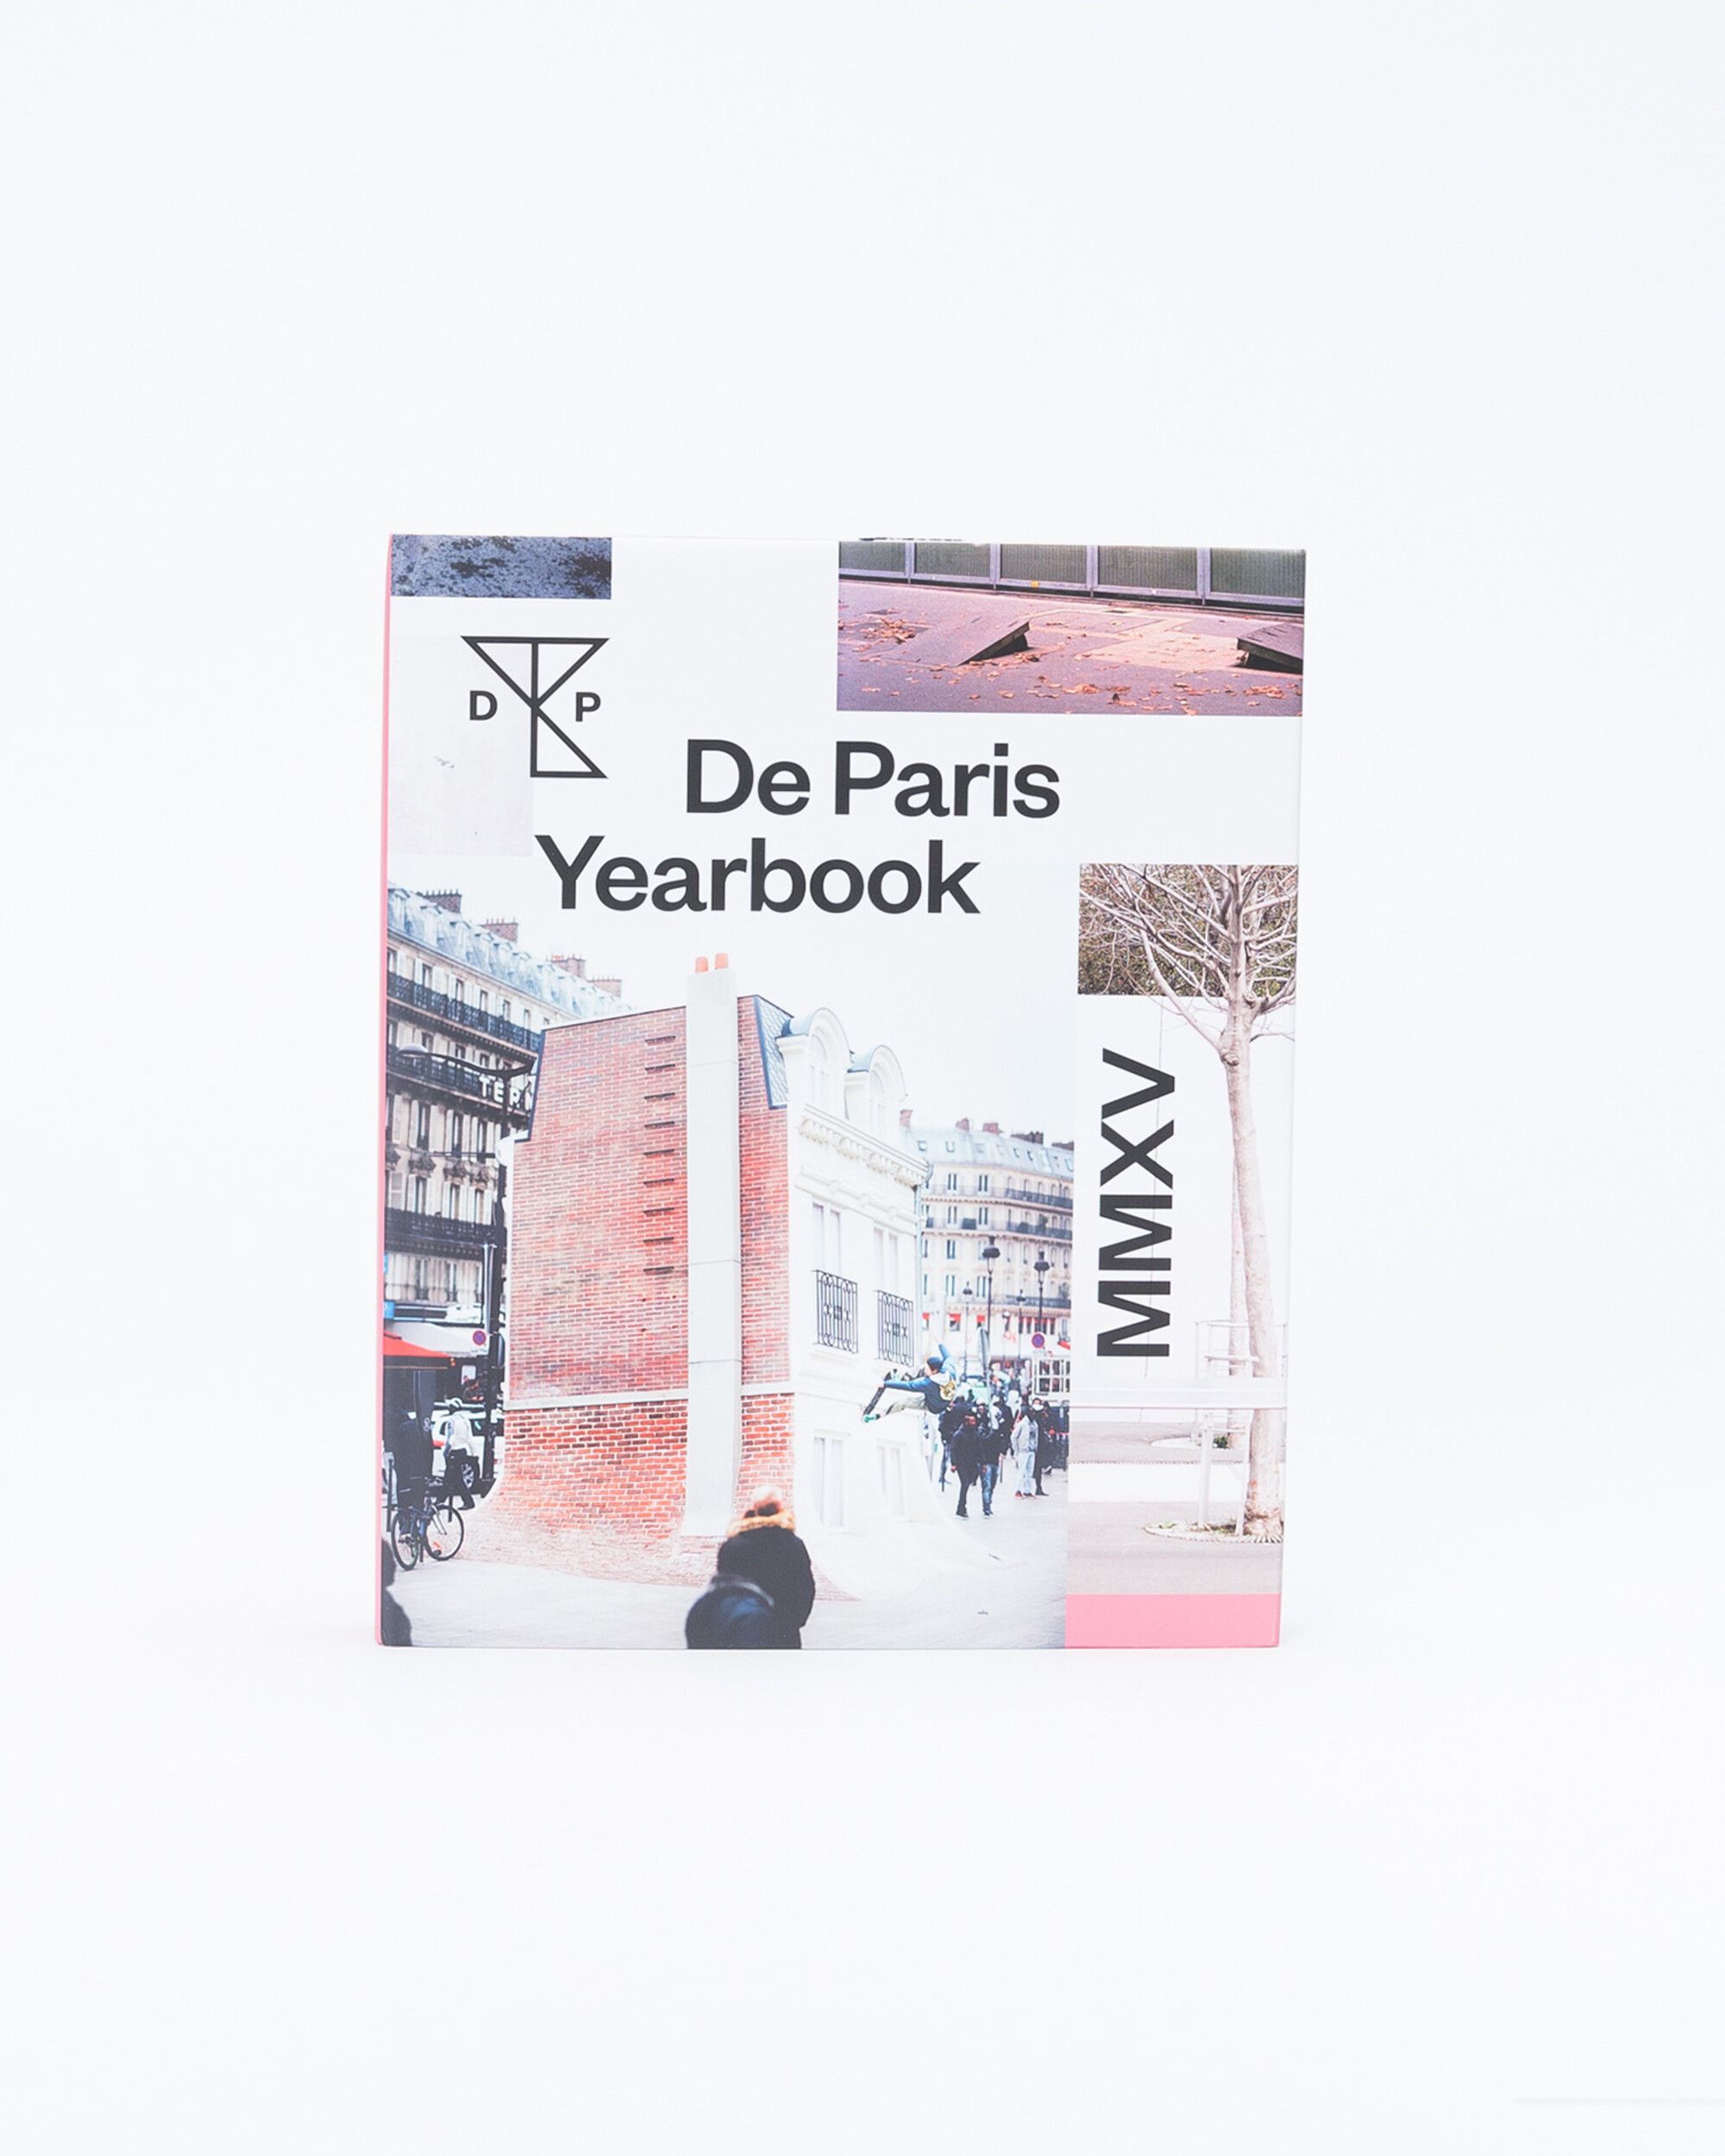 De Paris Yearbook MMXV 2015